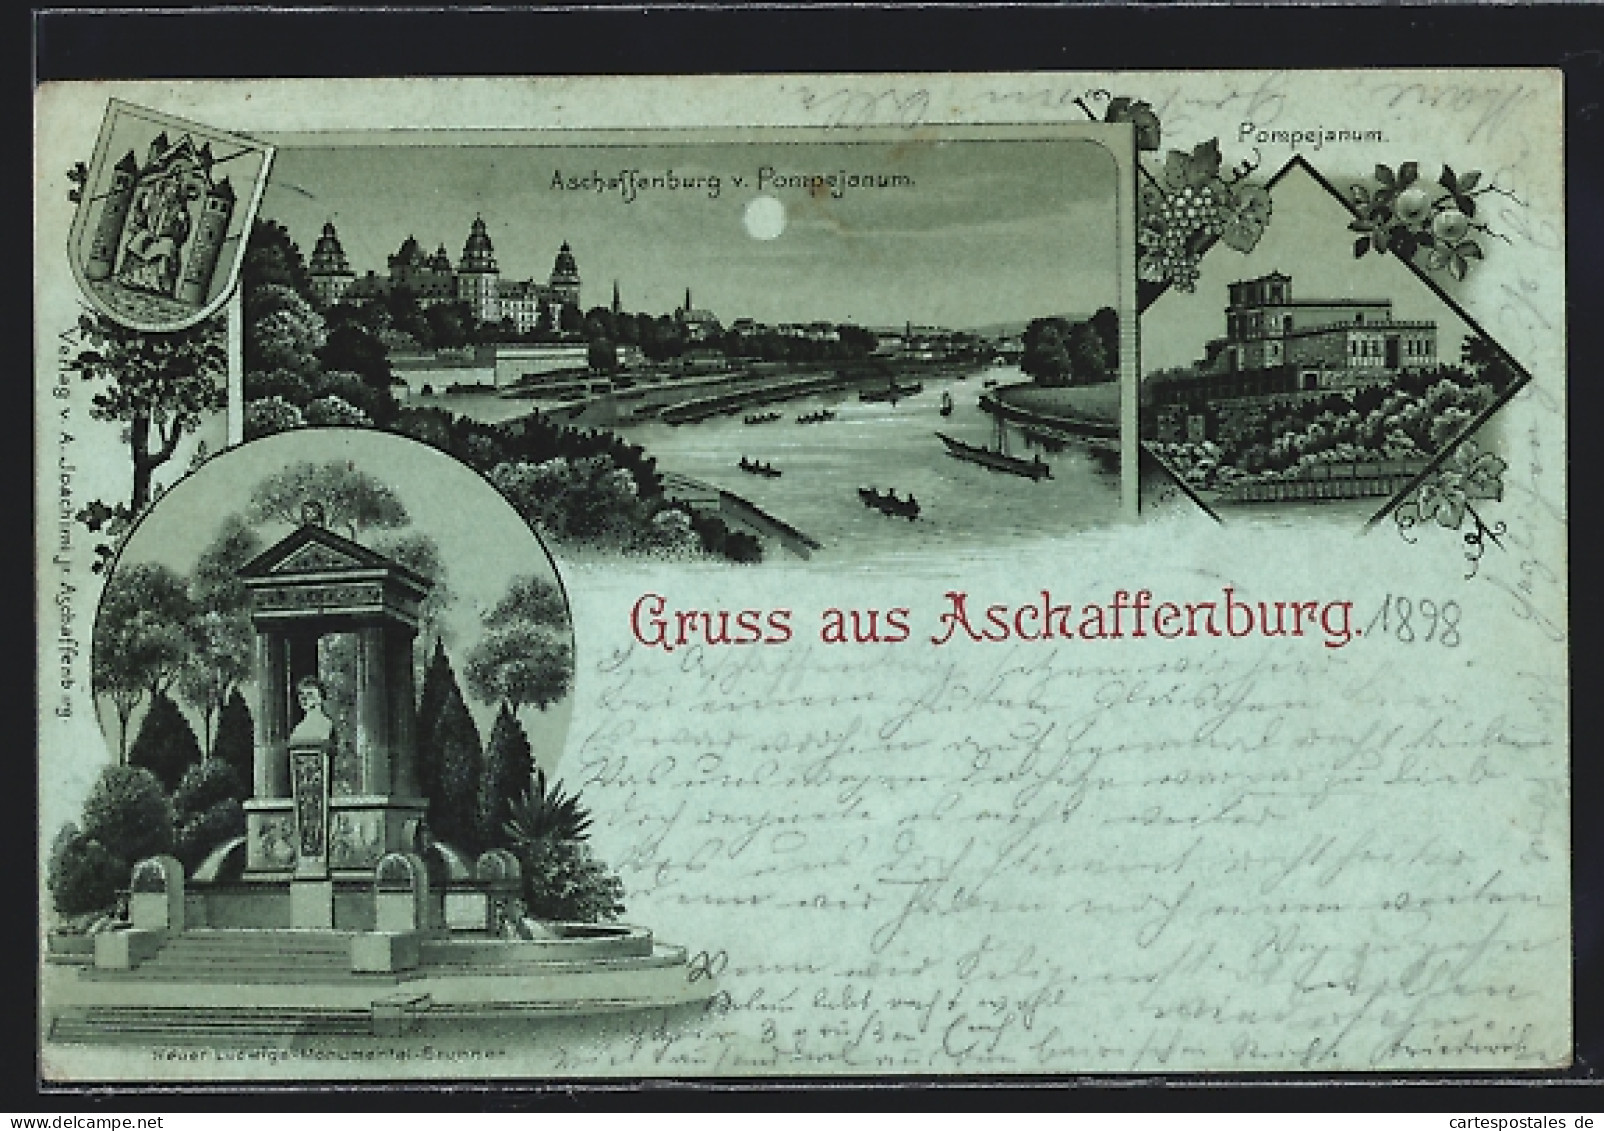 Mondschein-Lithographie Aschaffenburg, Neuer Ludwigs-Monumental-Brunnen, Pompejanum  - Aschaffenburg